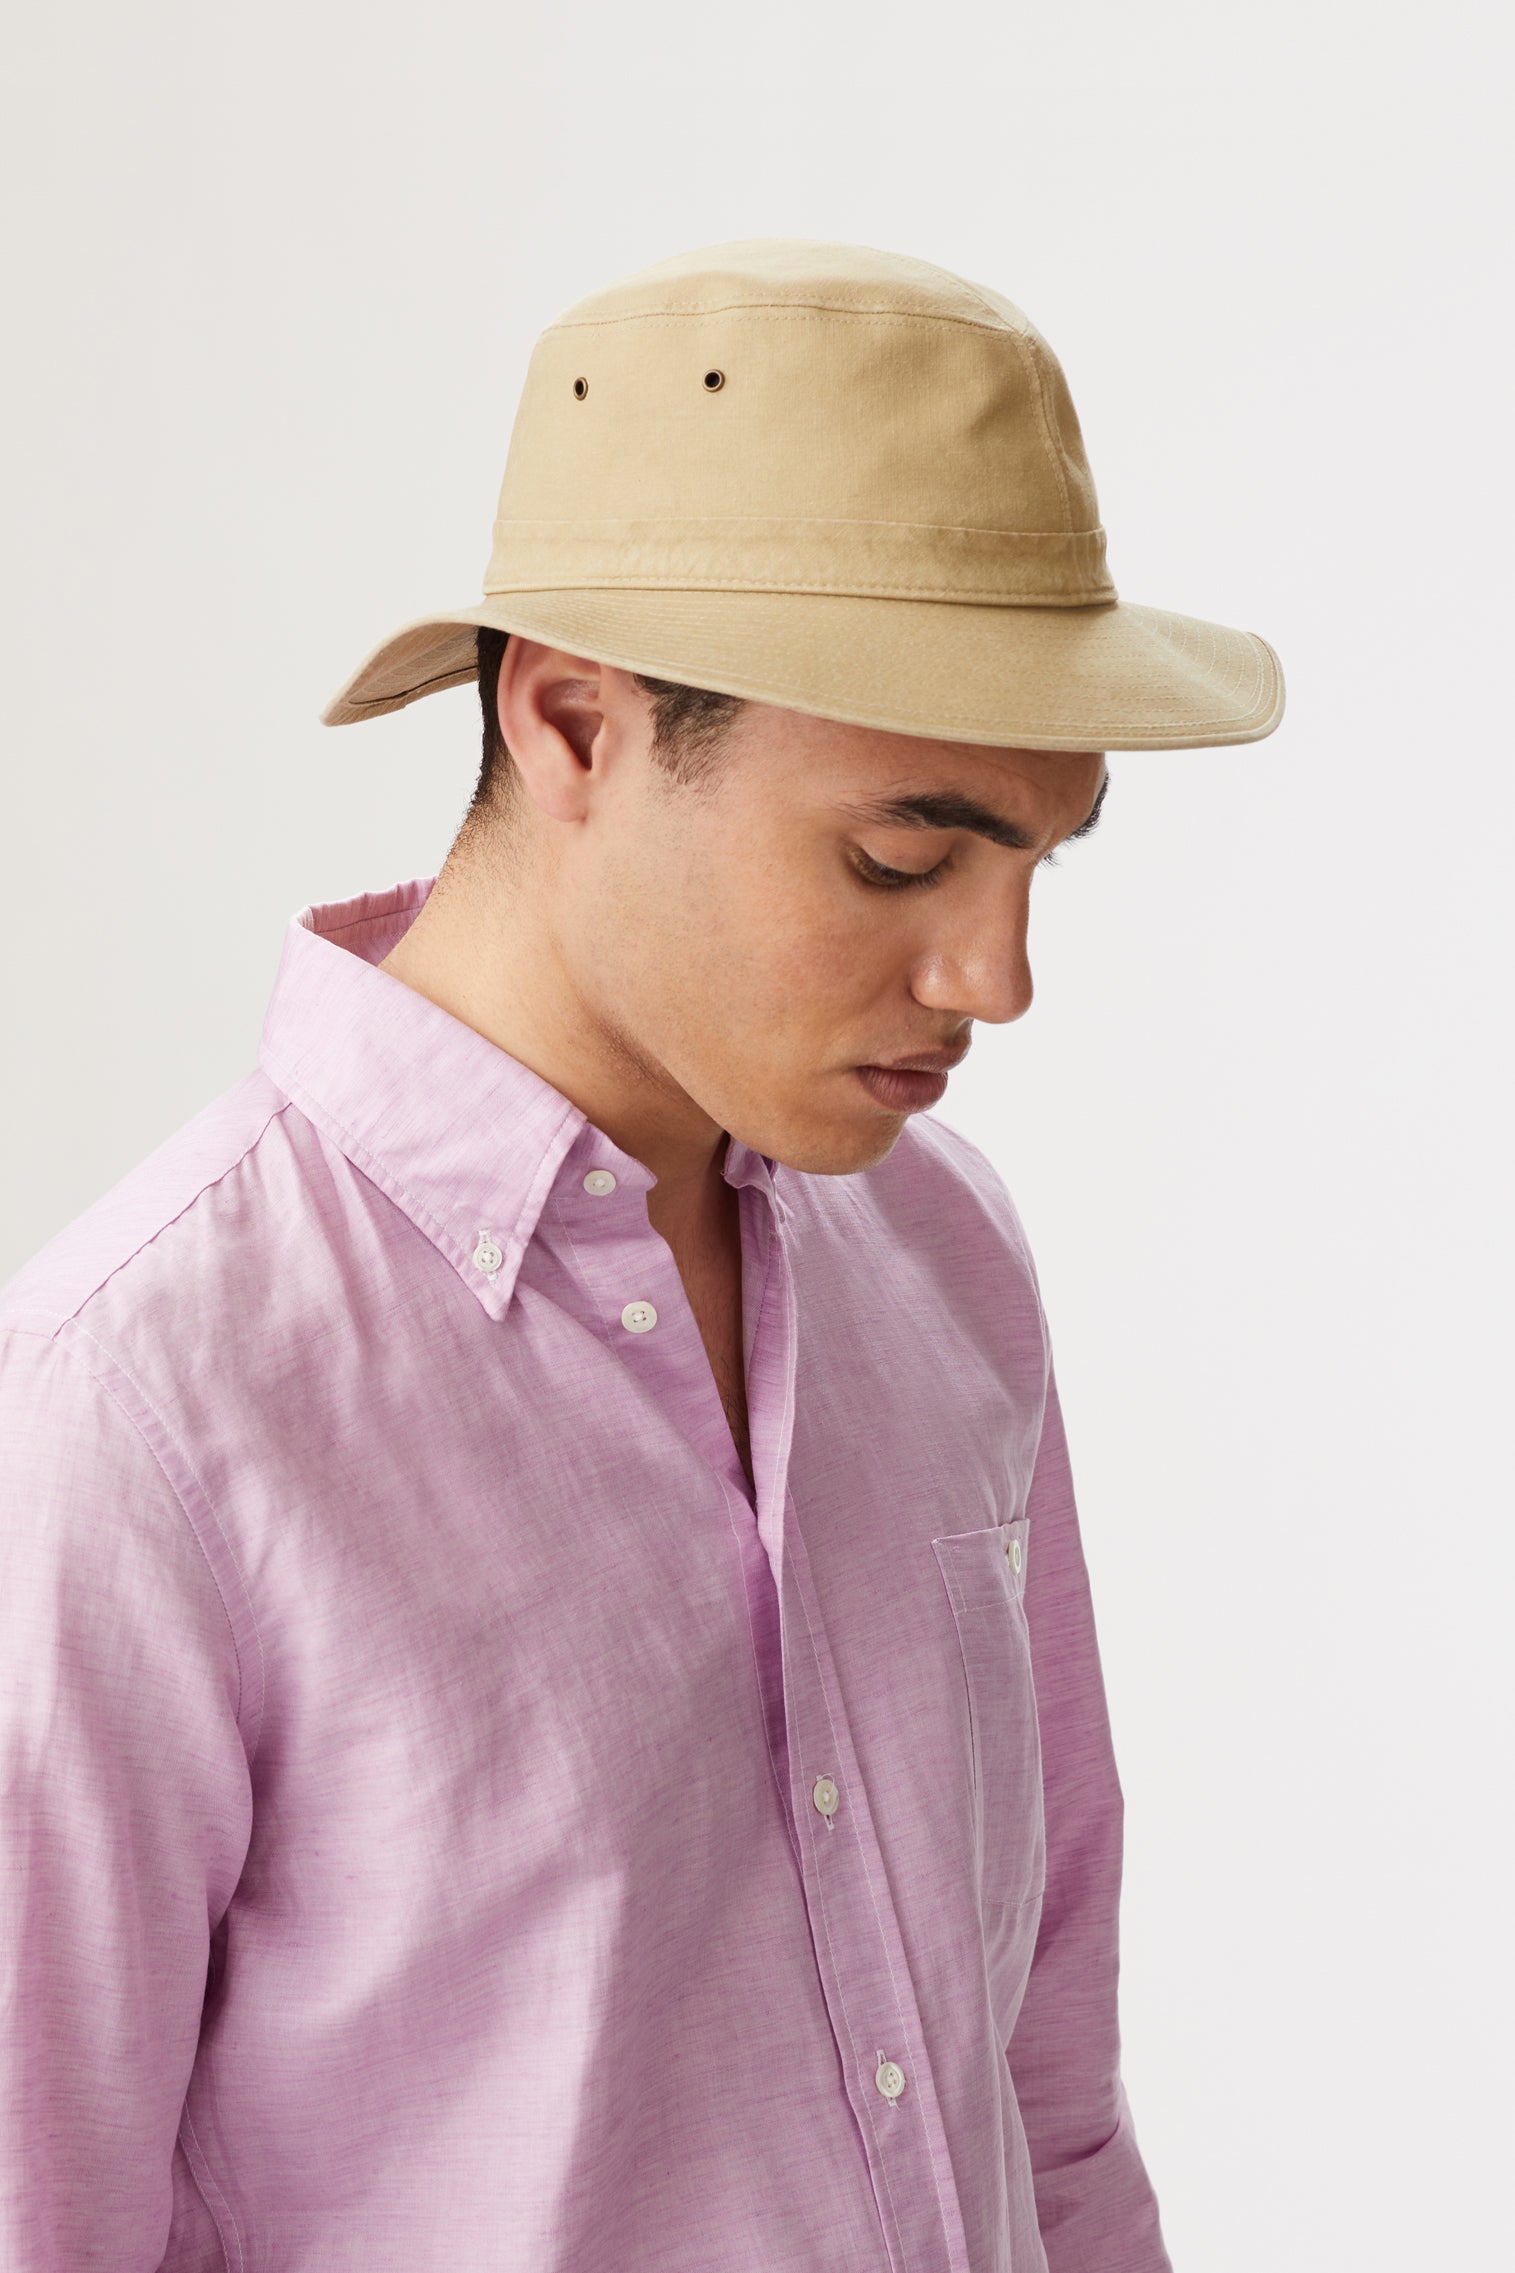 Men's Bucket Hats - Premium Bucket Hats for Men